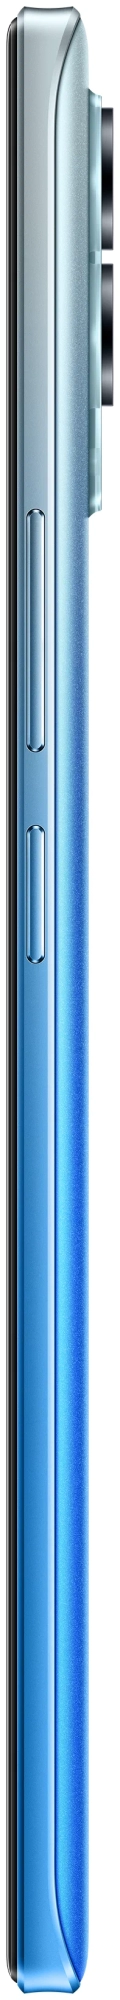 Смартфон Realme 8 Pro 6/128 ГБ Синий в Челябинске купить по недорогим ценам с доставкой